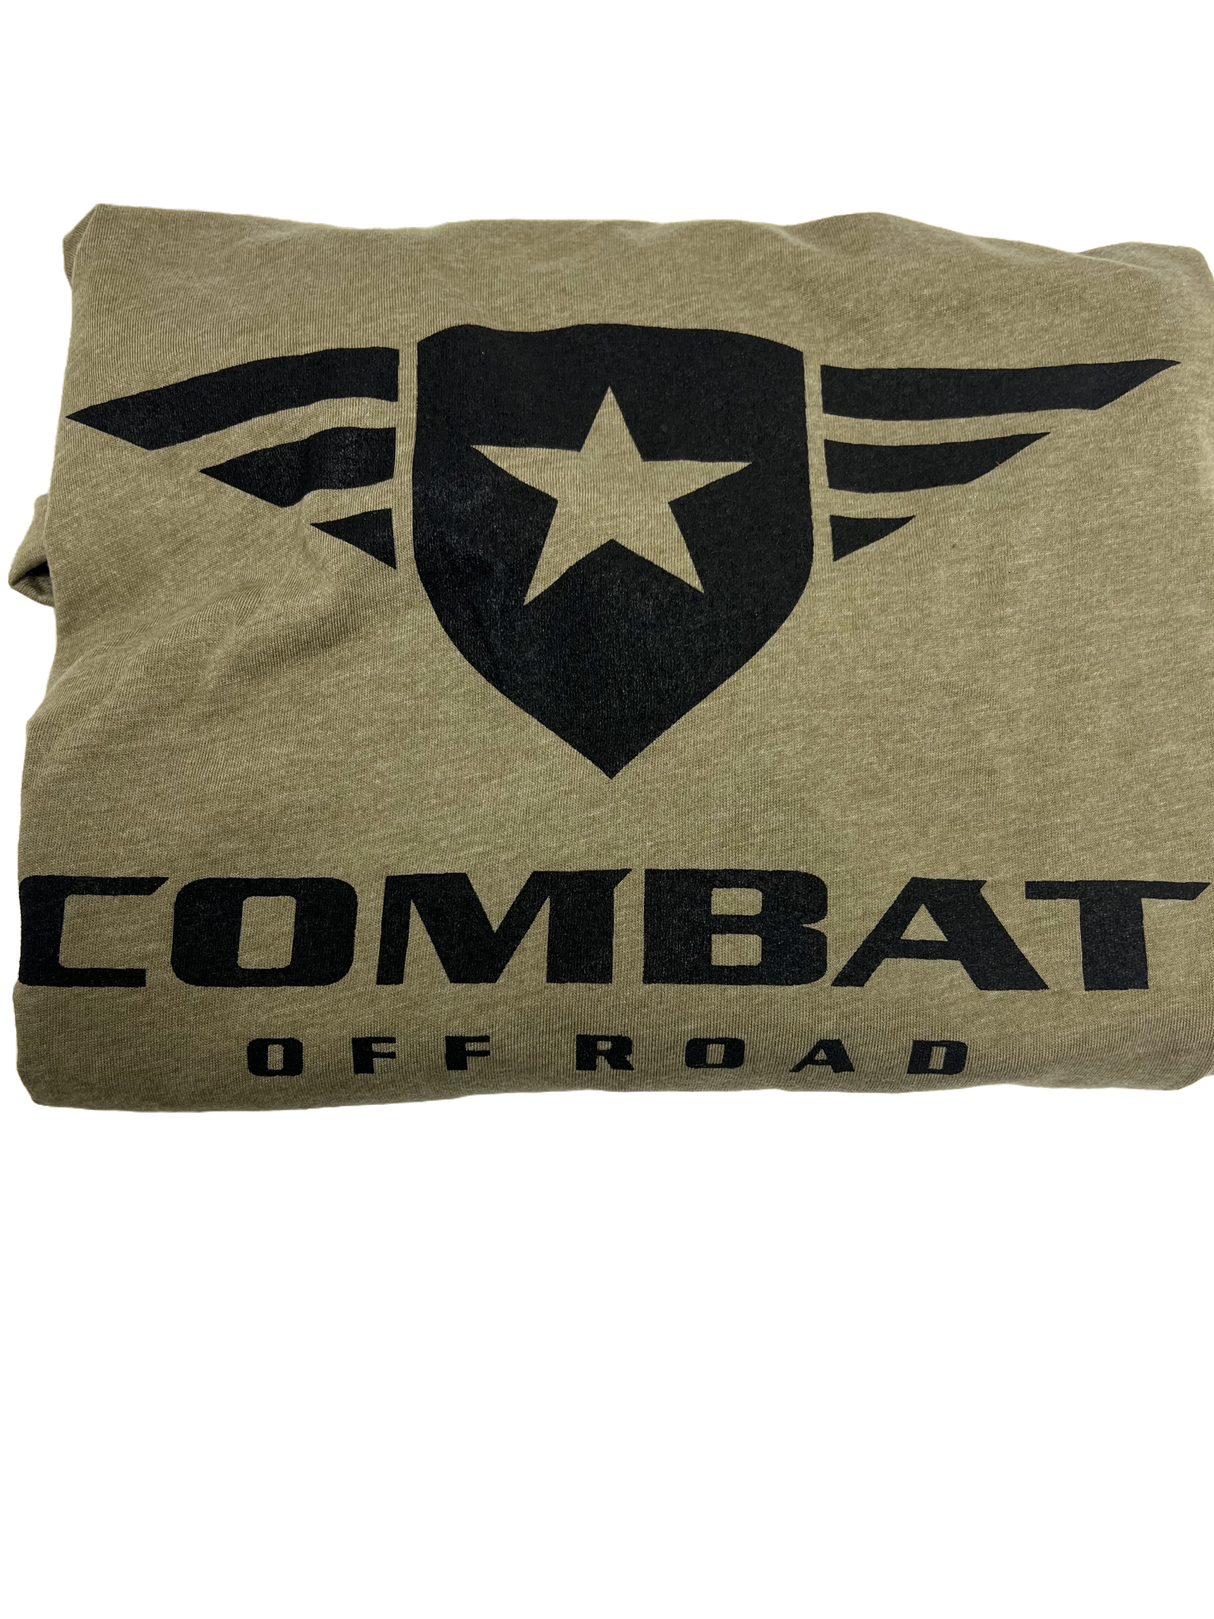 Combat Off Road T-Shirt - Olive